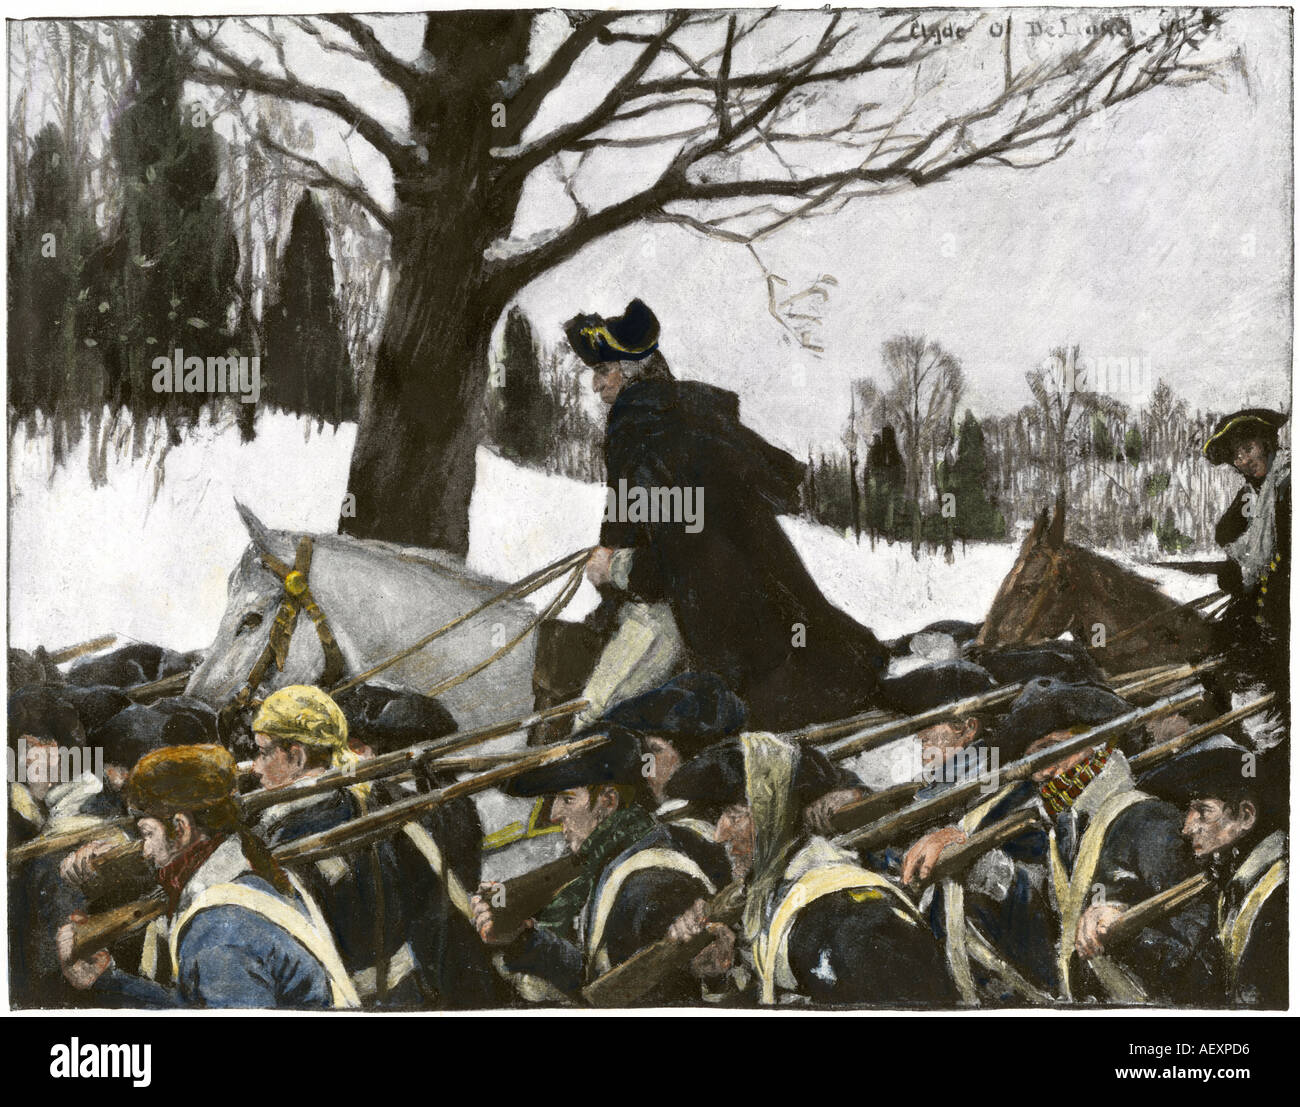 General George Washington führen der Kontinentalen Armee zu Valley Forge winter Camp. Handcolorierte halftone einer Abbildung Stockfoto